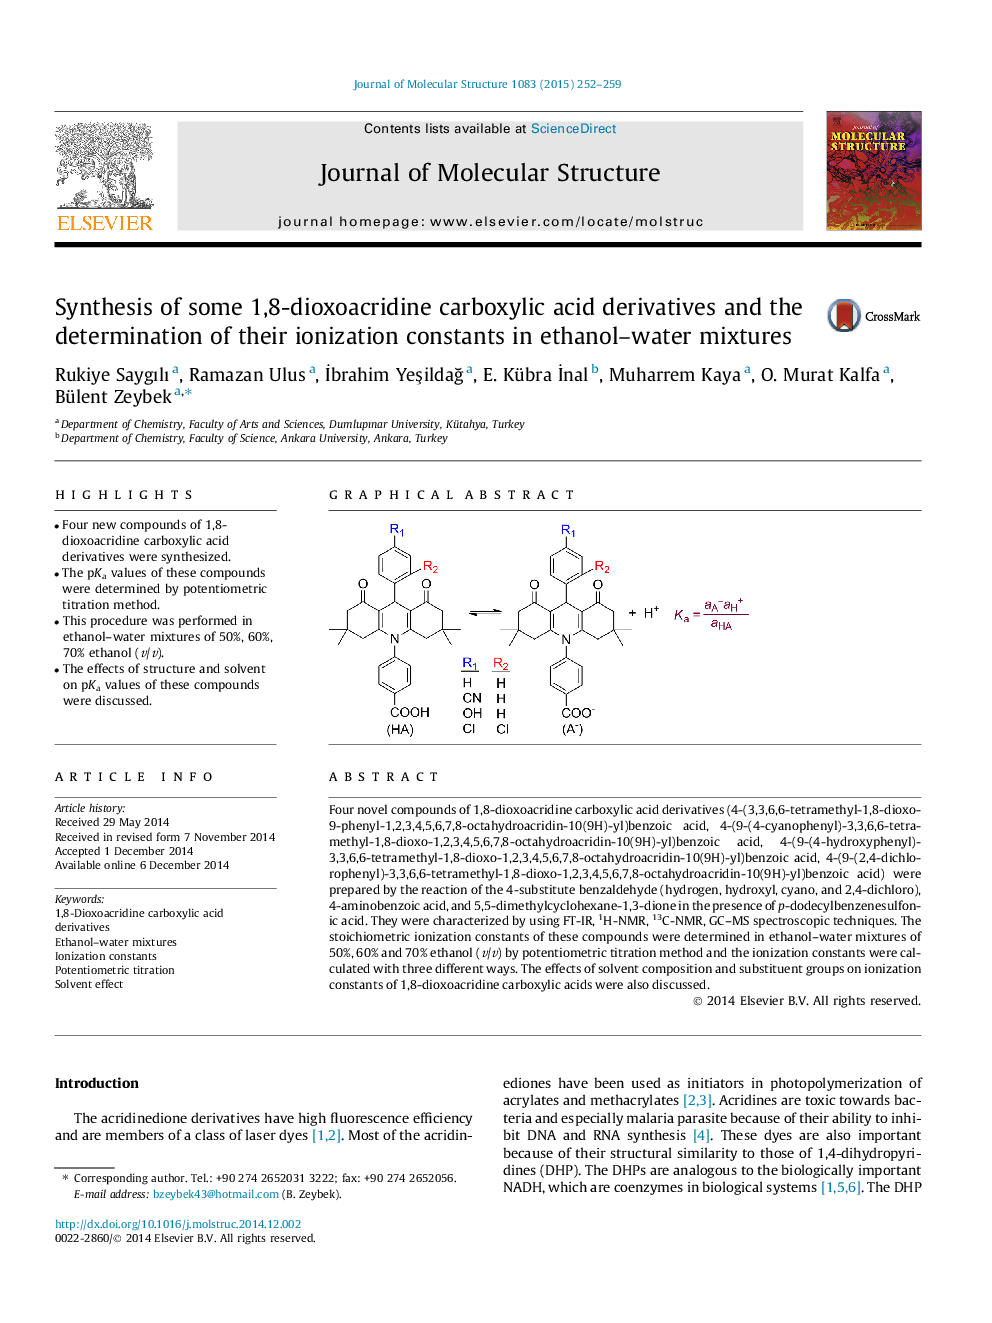 سنتز برخی از مشتقات اسید کربوکسیلیک 1-8 دیاکسوآکرییدیین و تعیین ثابت یونیزاسیون آنها در مخلوط اتانول-آب 